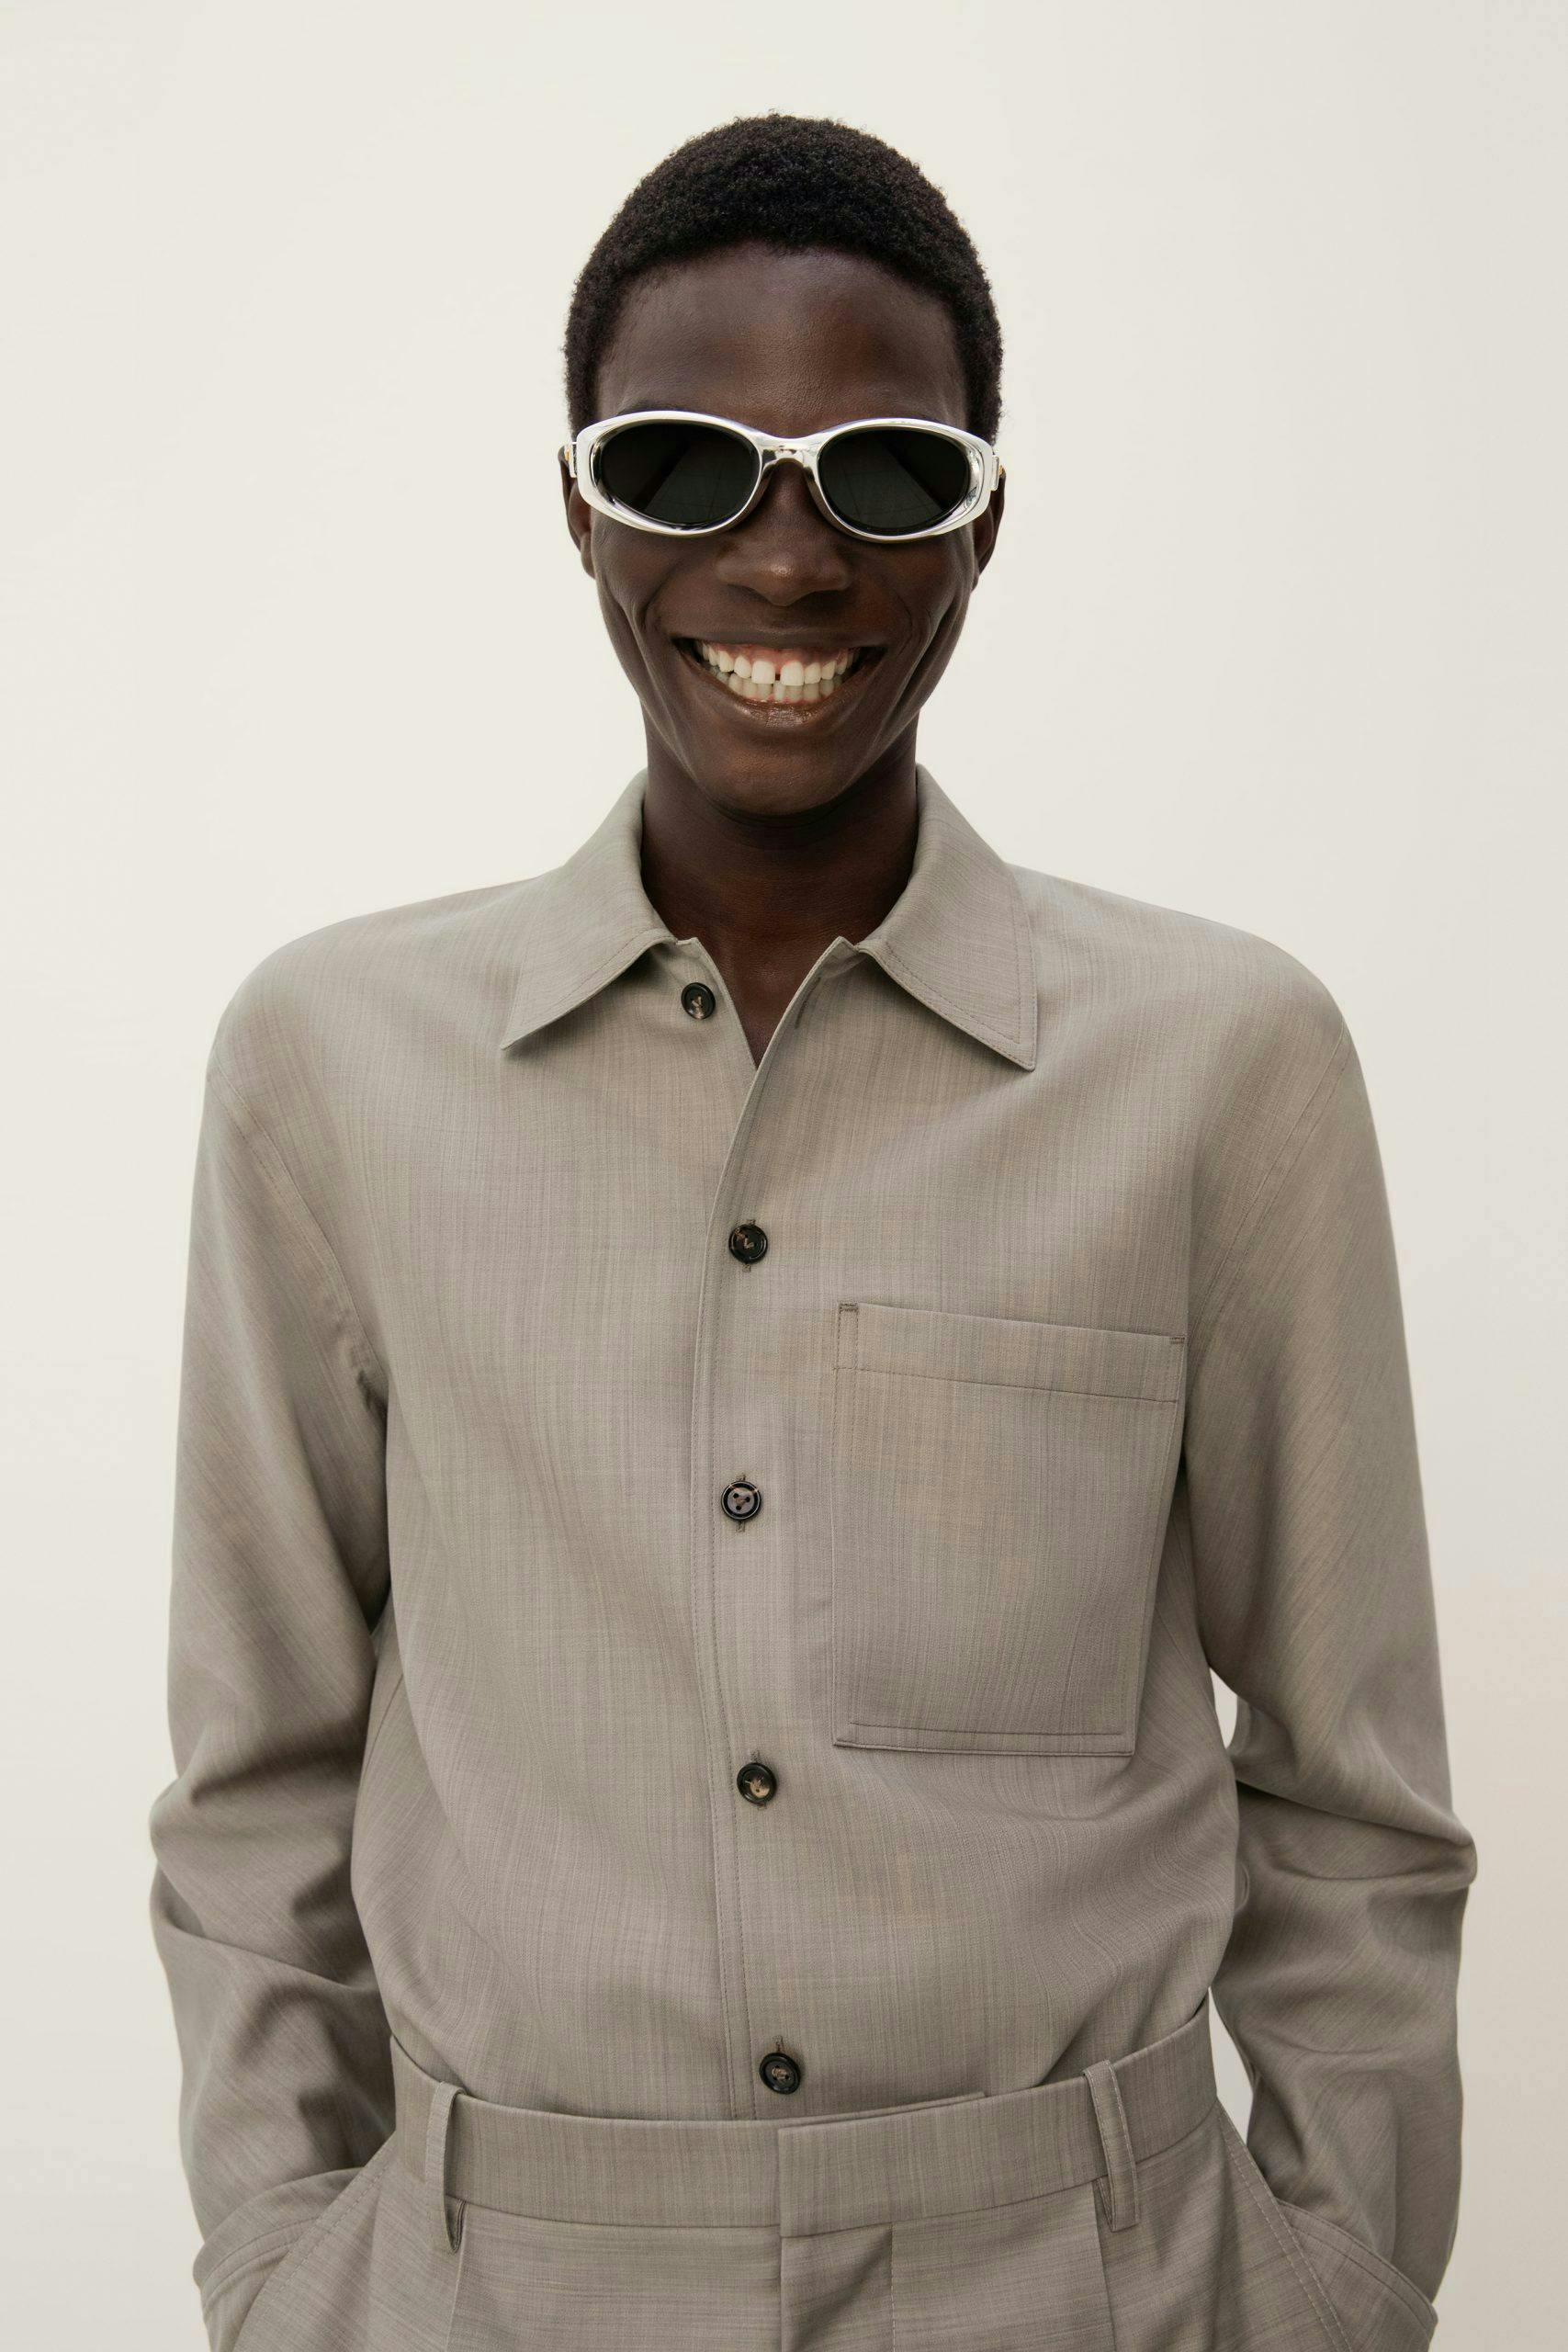 shirt smile head face person sunglasses coat suit man adult